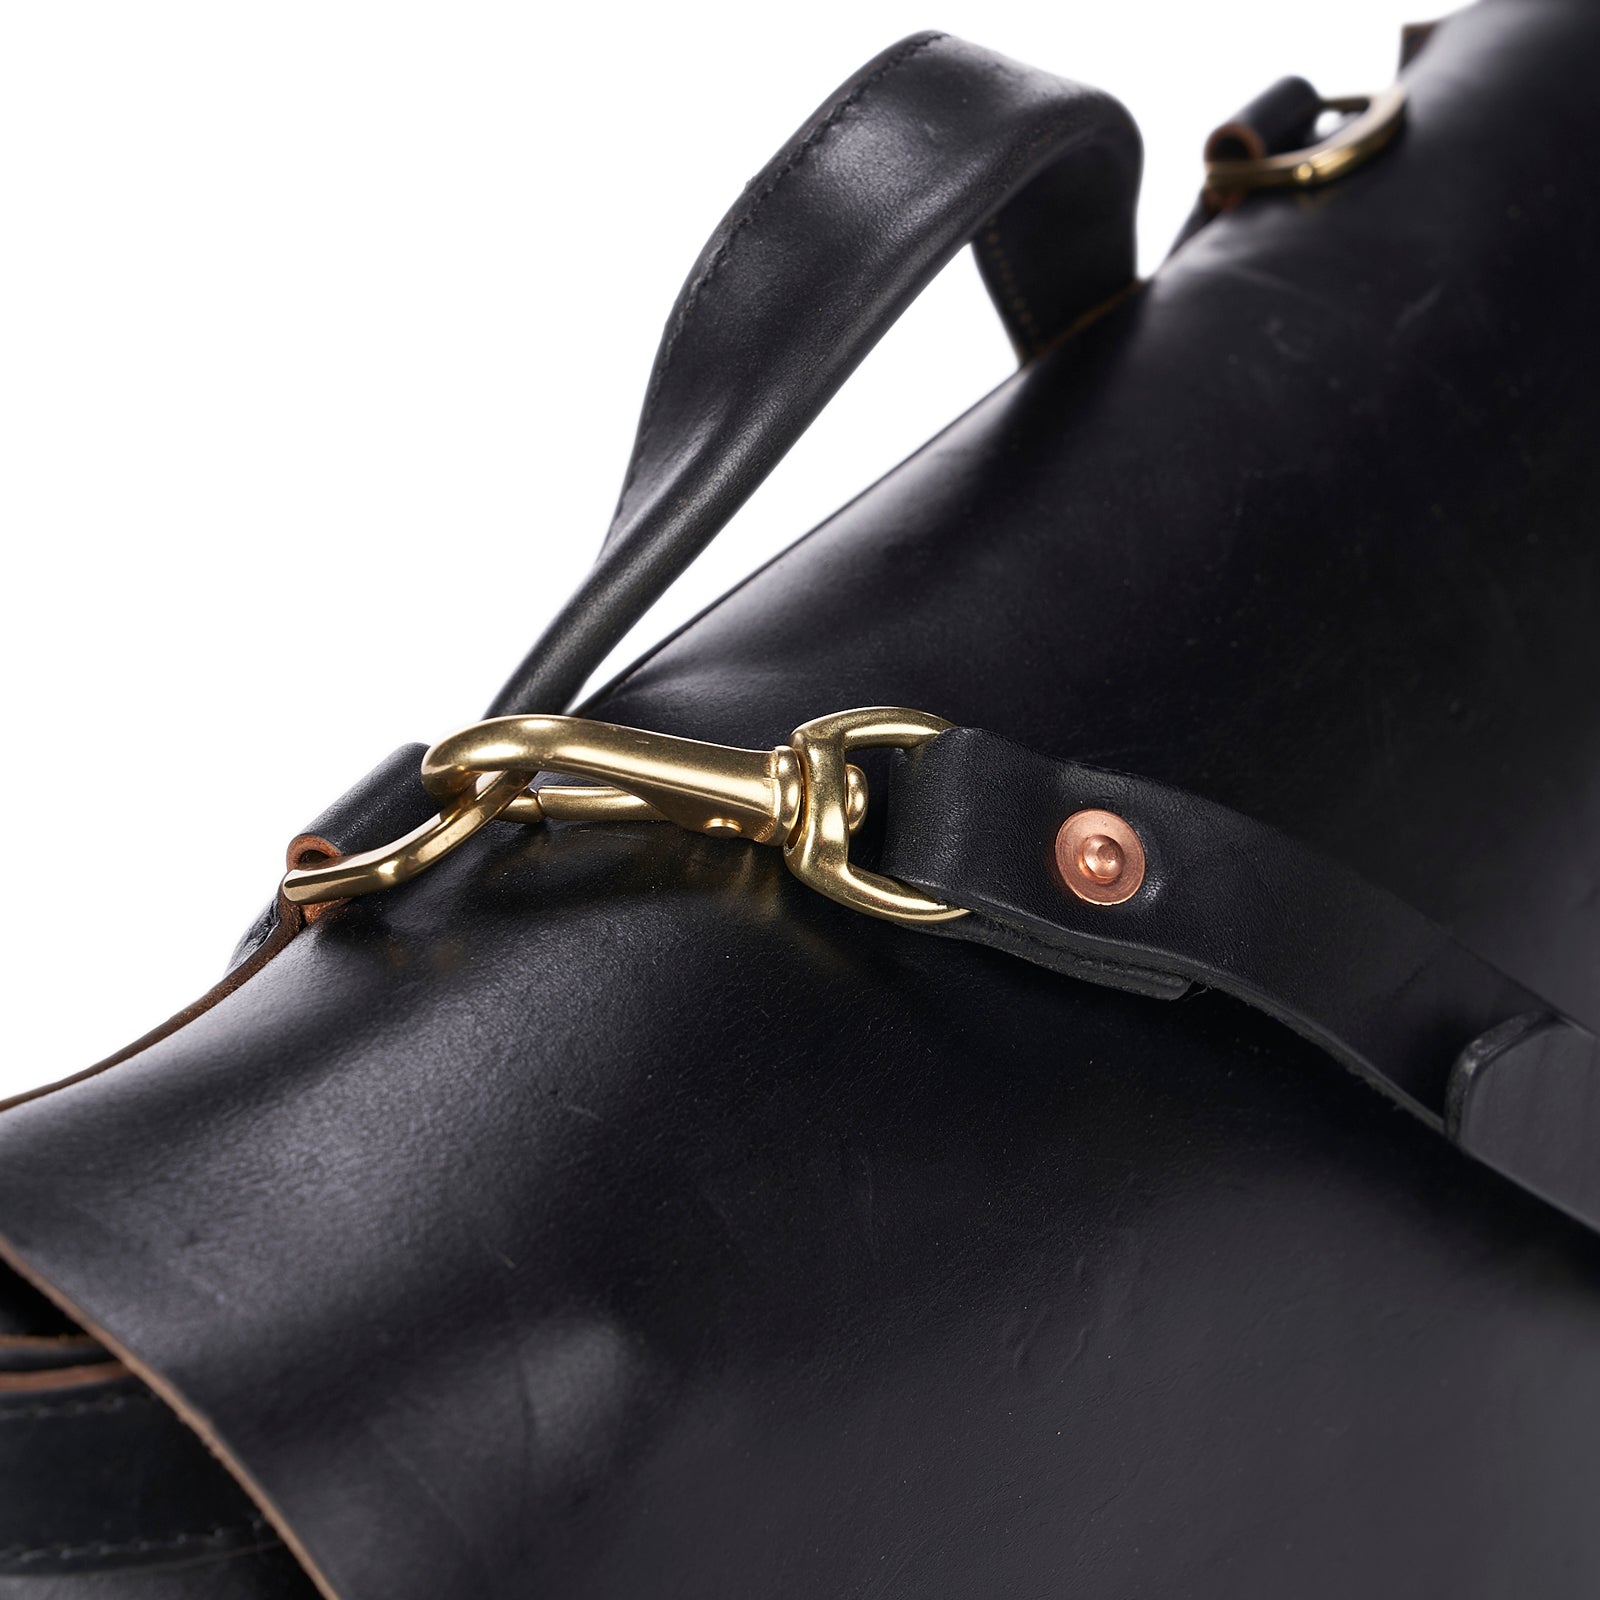 Chicago Mail Bag No. 721 — Coronado Leather